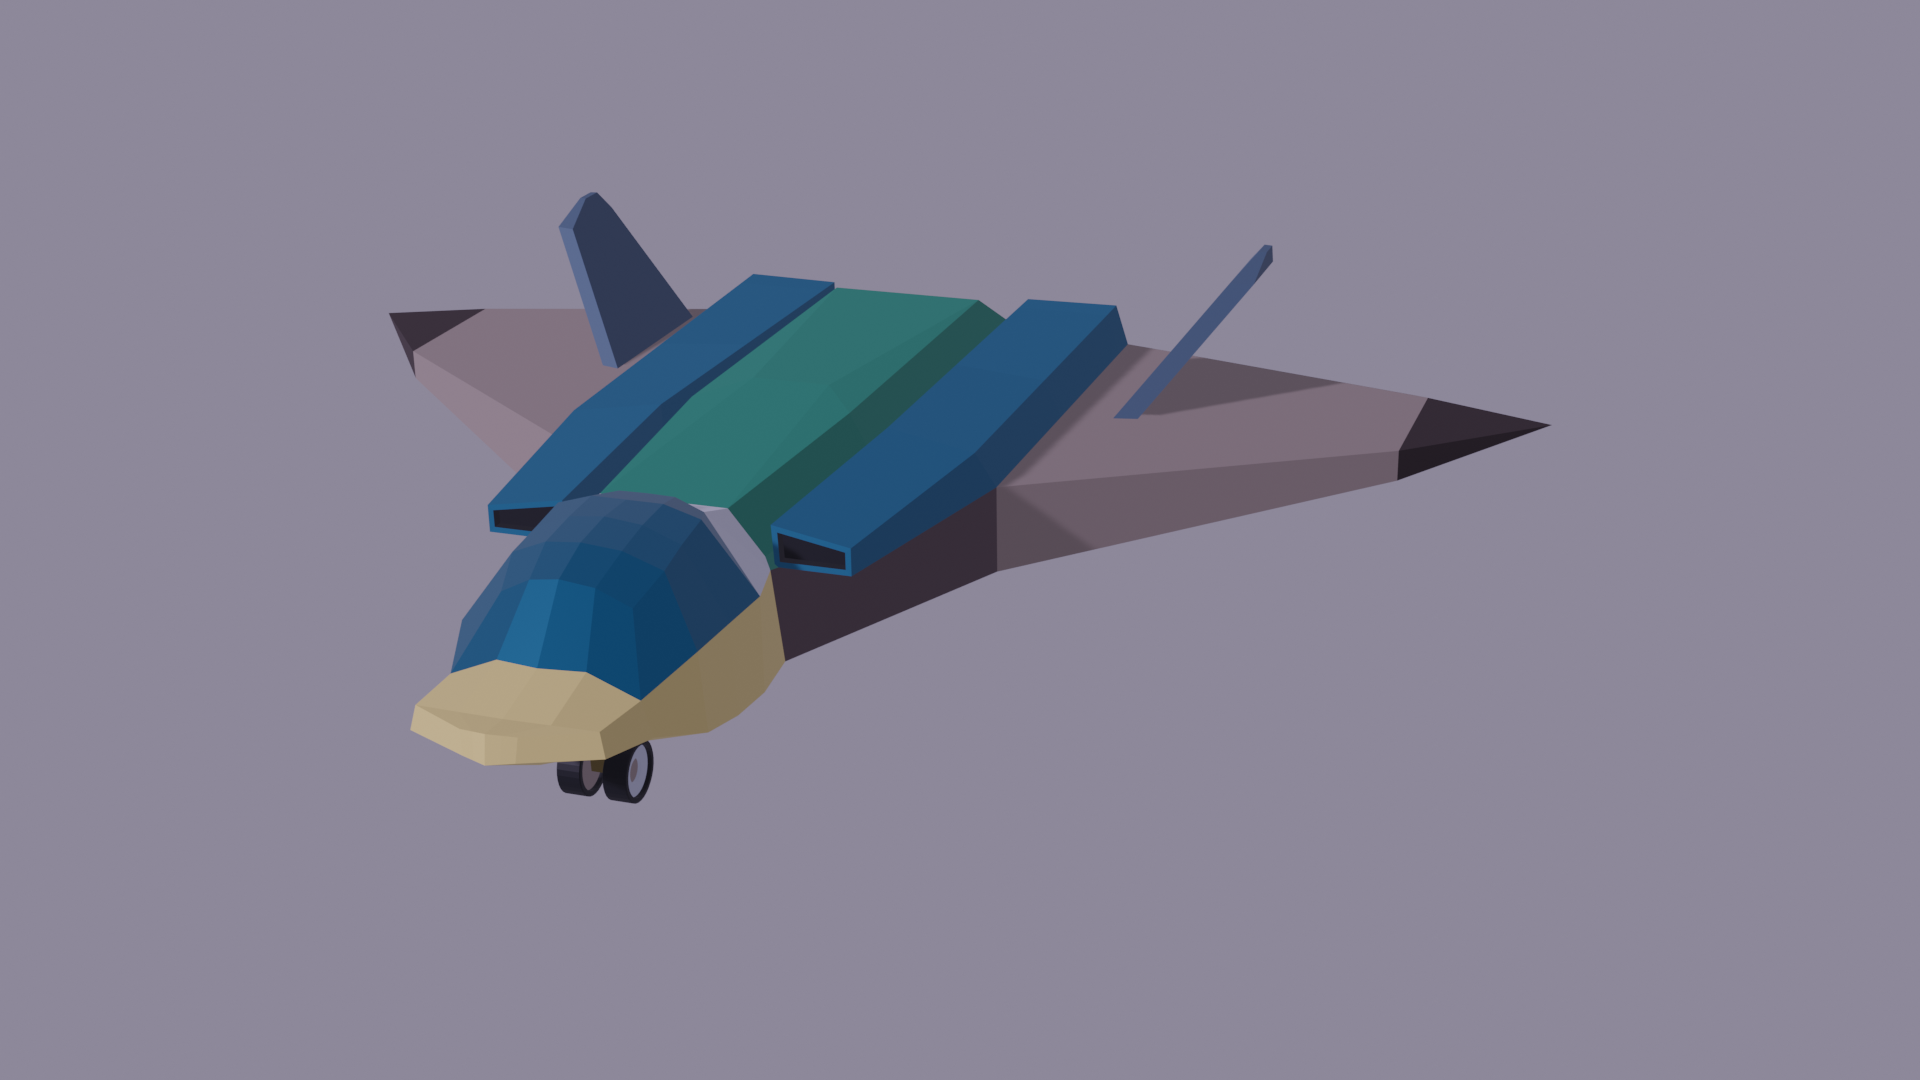 The Mallard - A Budget Interstellar Spaceplane